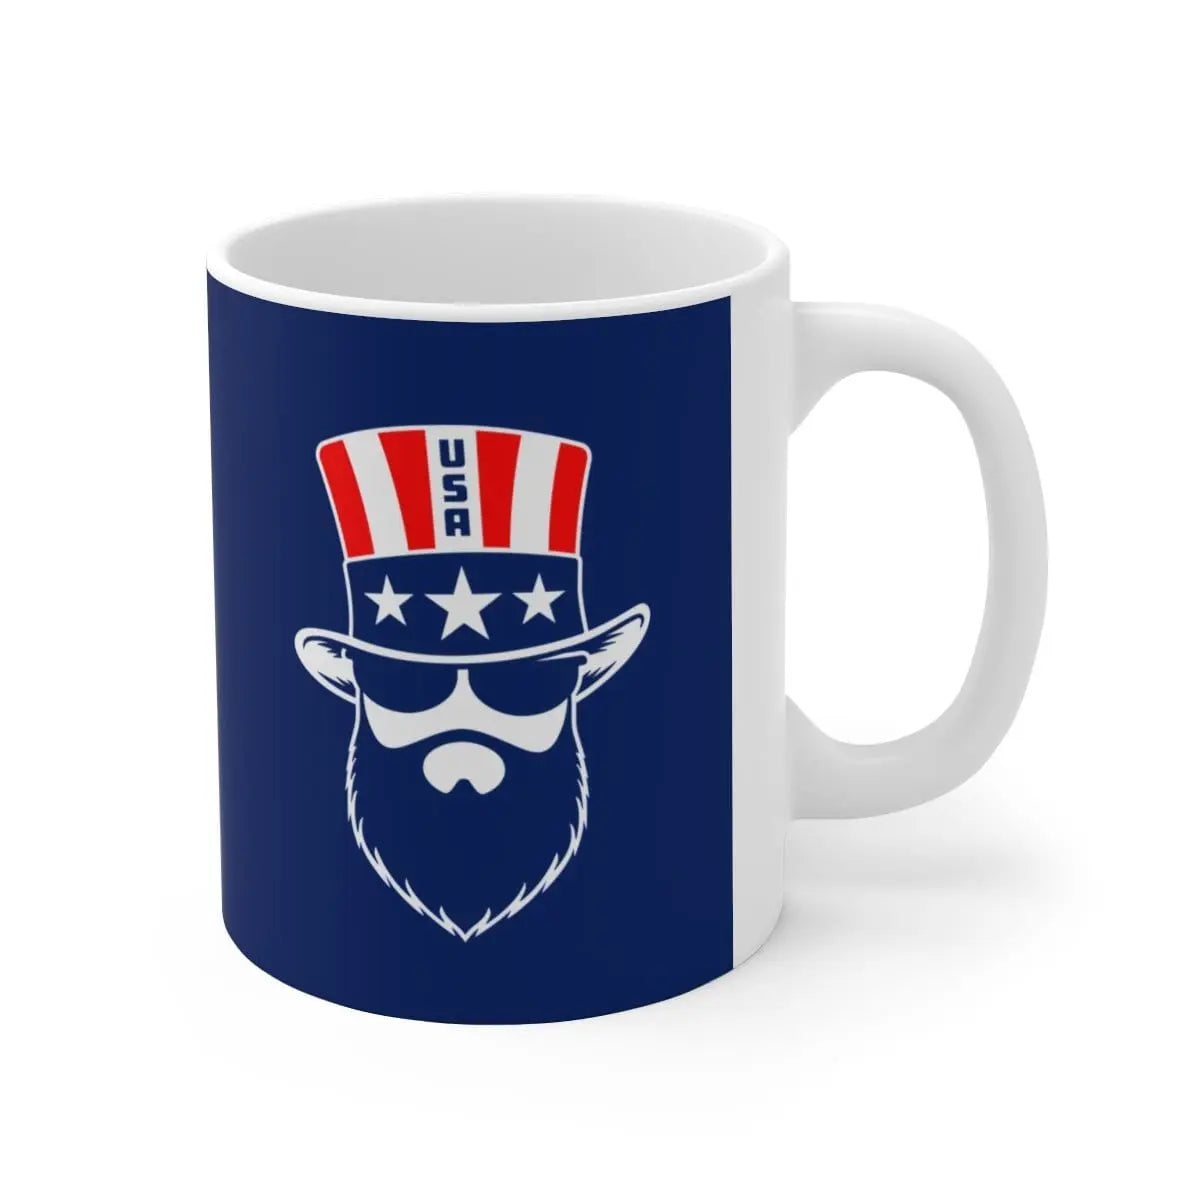 Bearded Patriot White Ceramic Coffee Mug|Mug